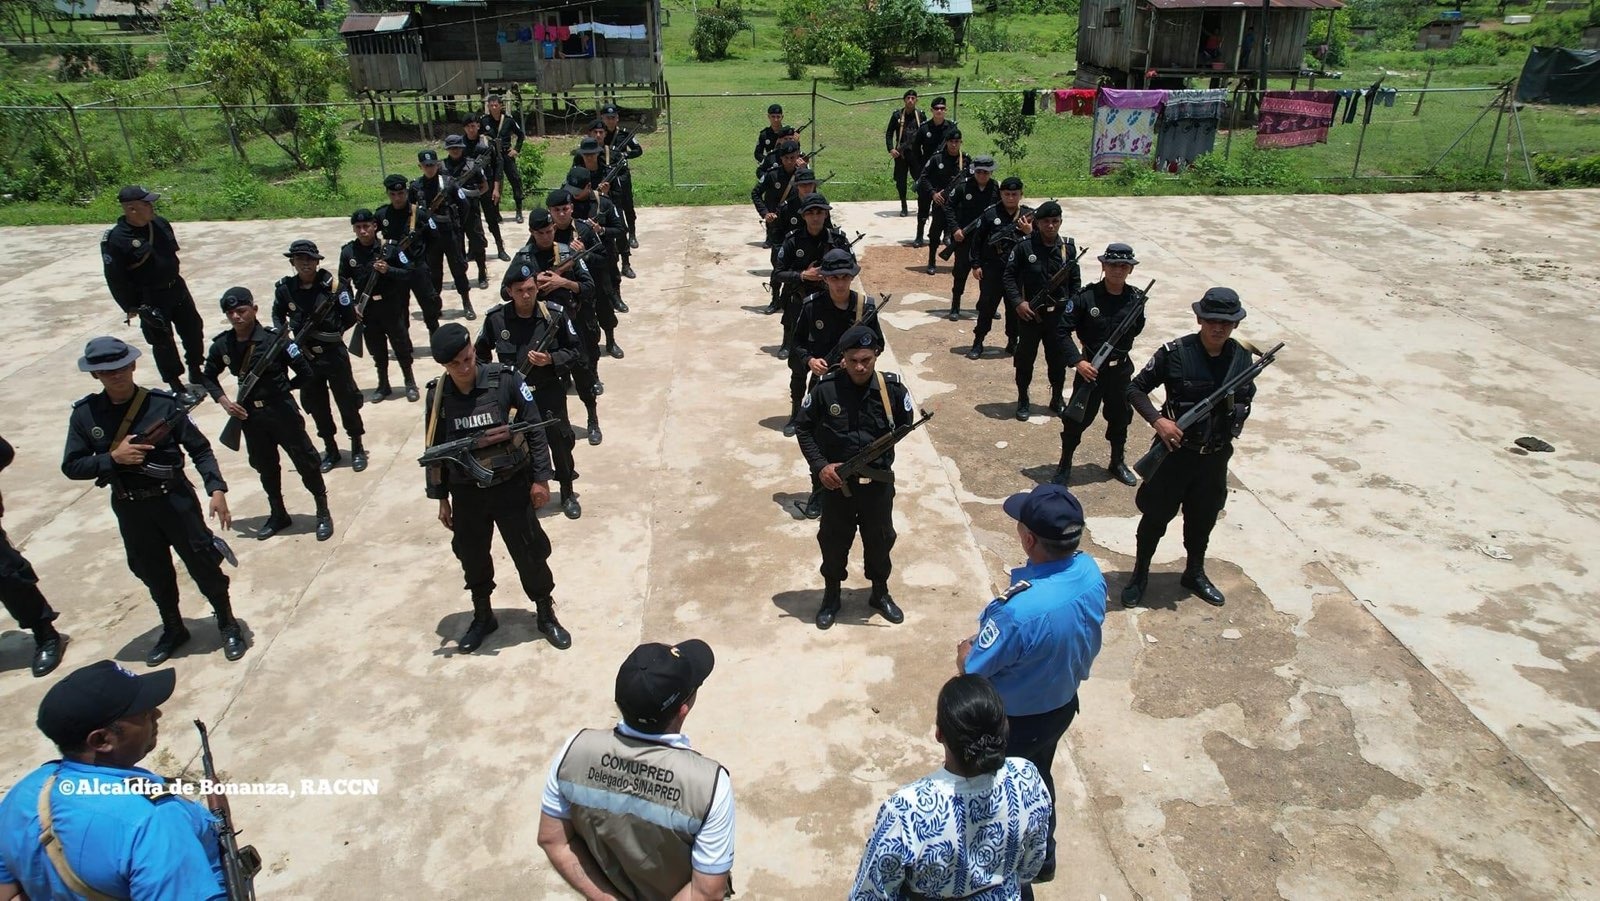 Presencia policial en comunidad indígena genera temor